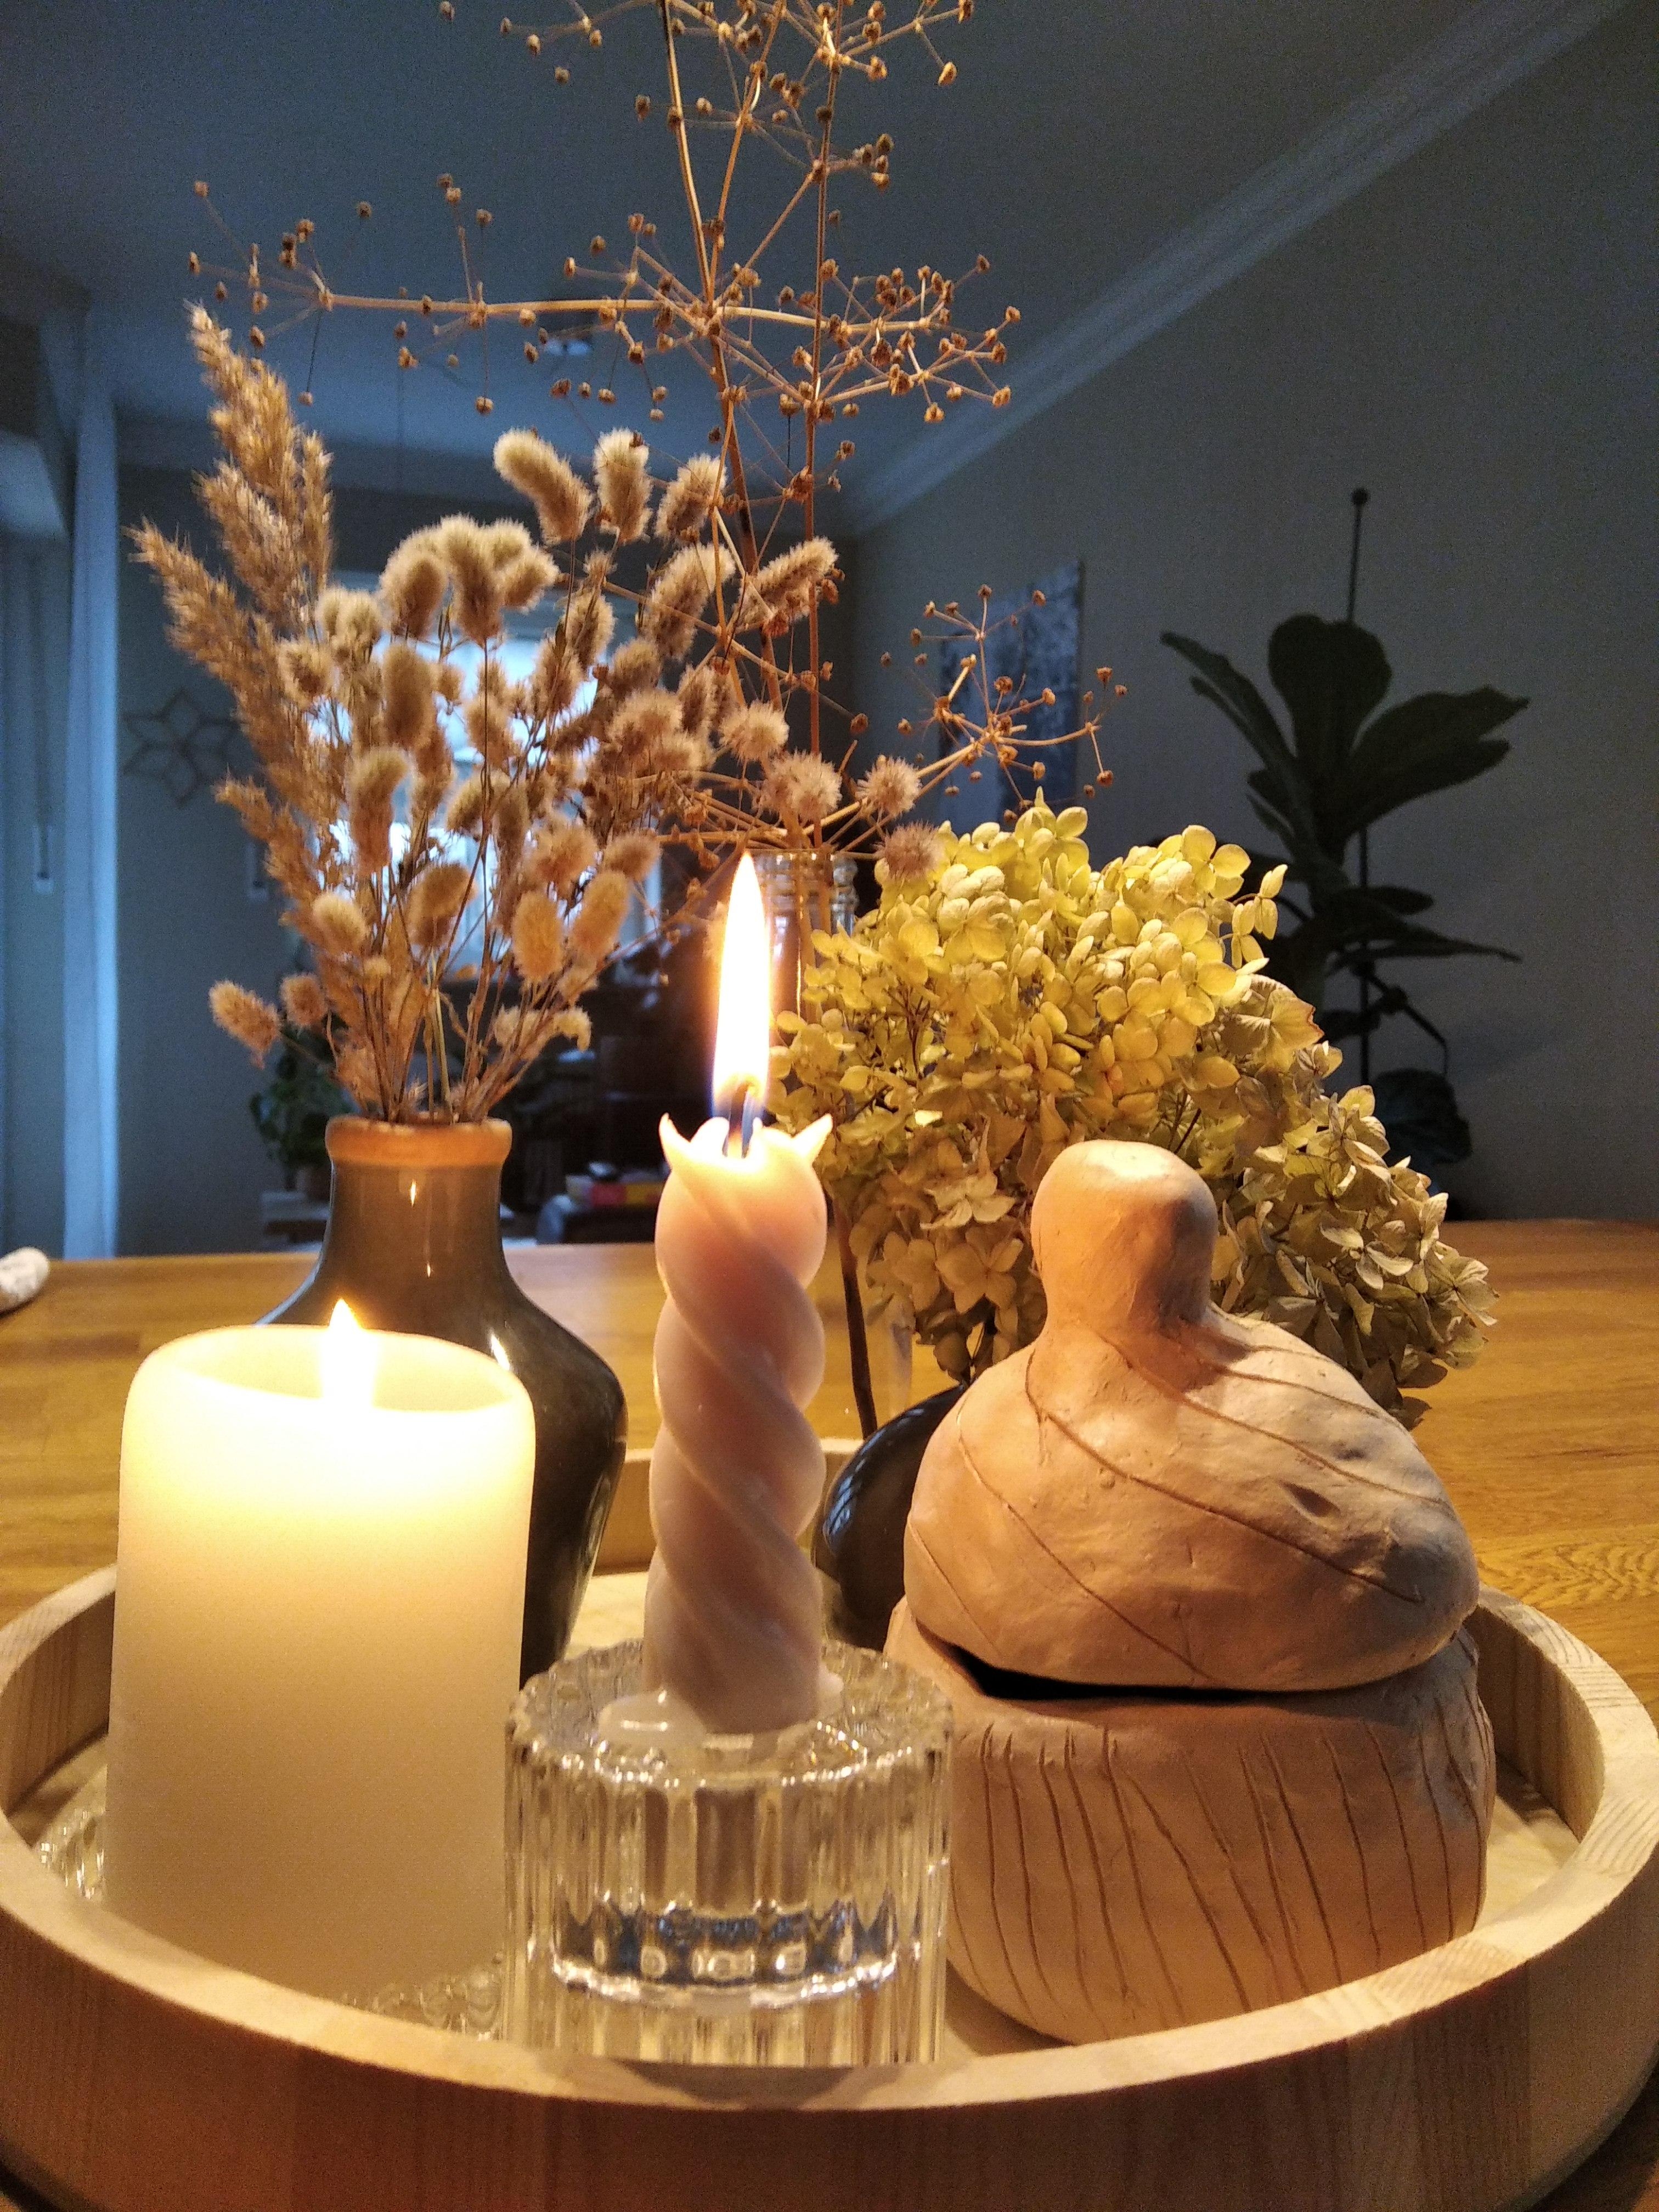 Bestes Weihnachtsgeschenk vom besten Kind: selbstgemachte Pralinendose 😍 #DIY #Tischdeko 